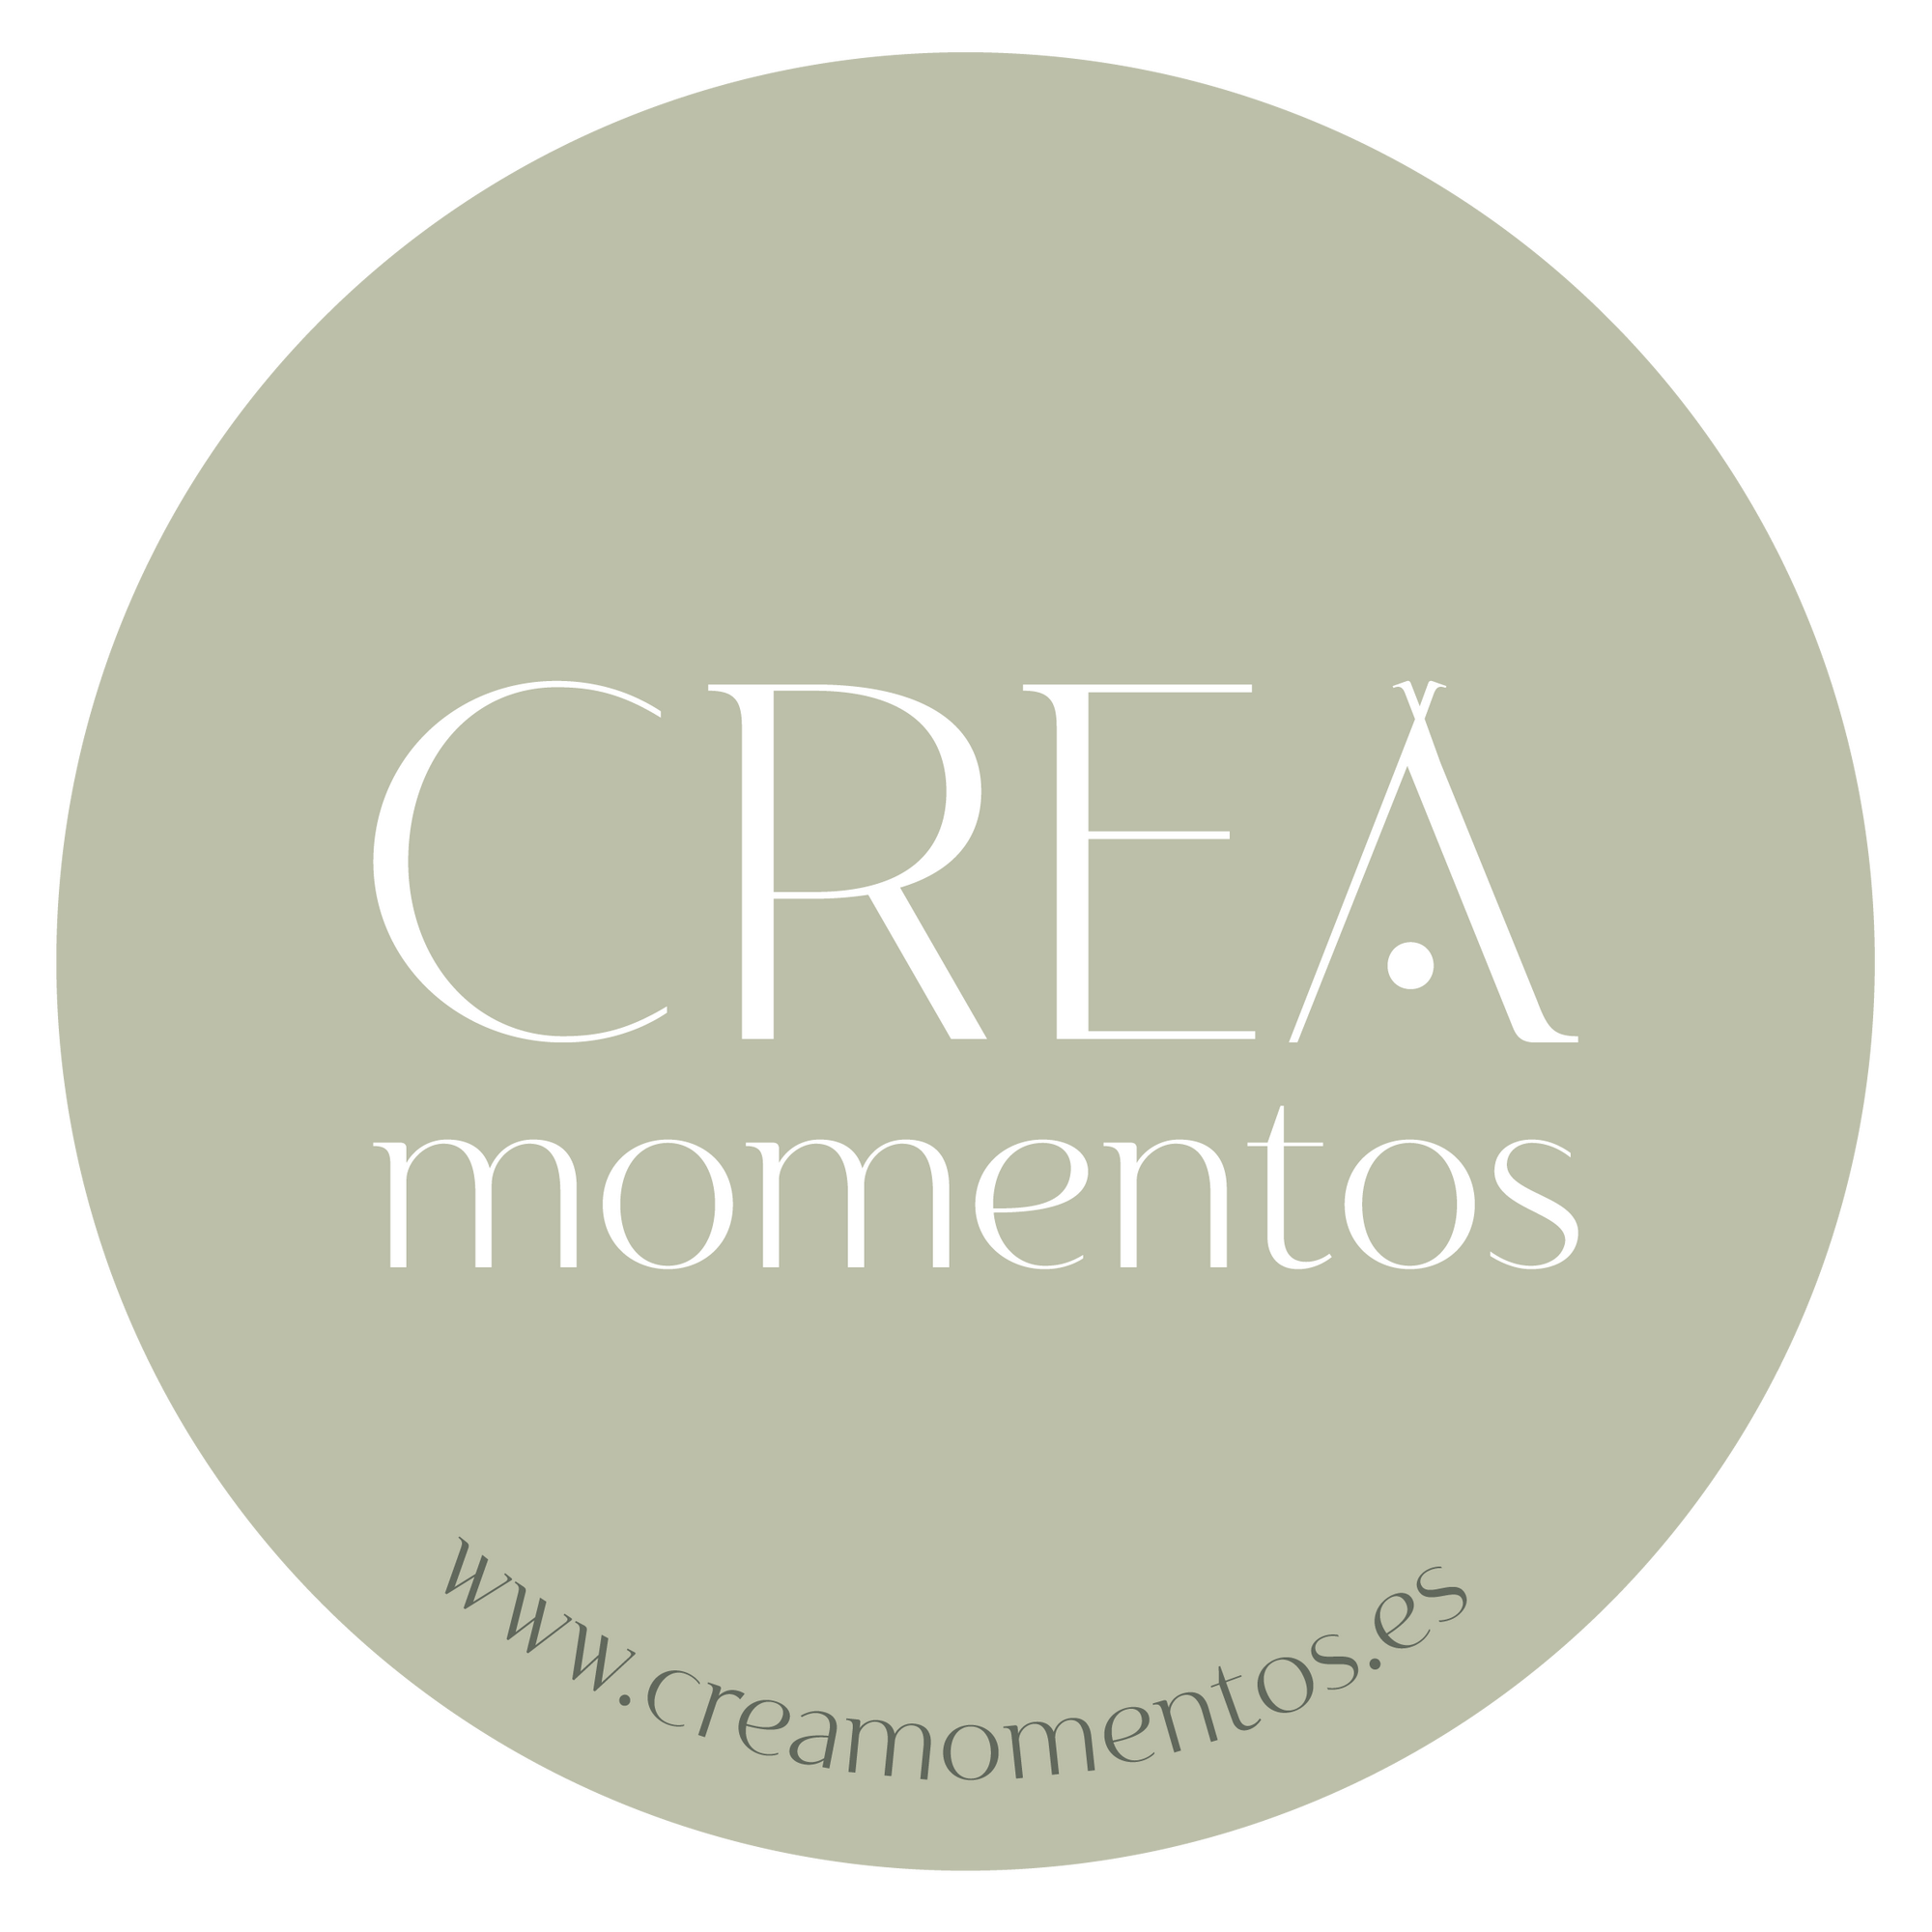 Images Crea Momentos